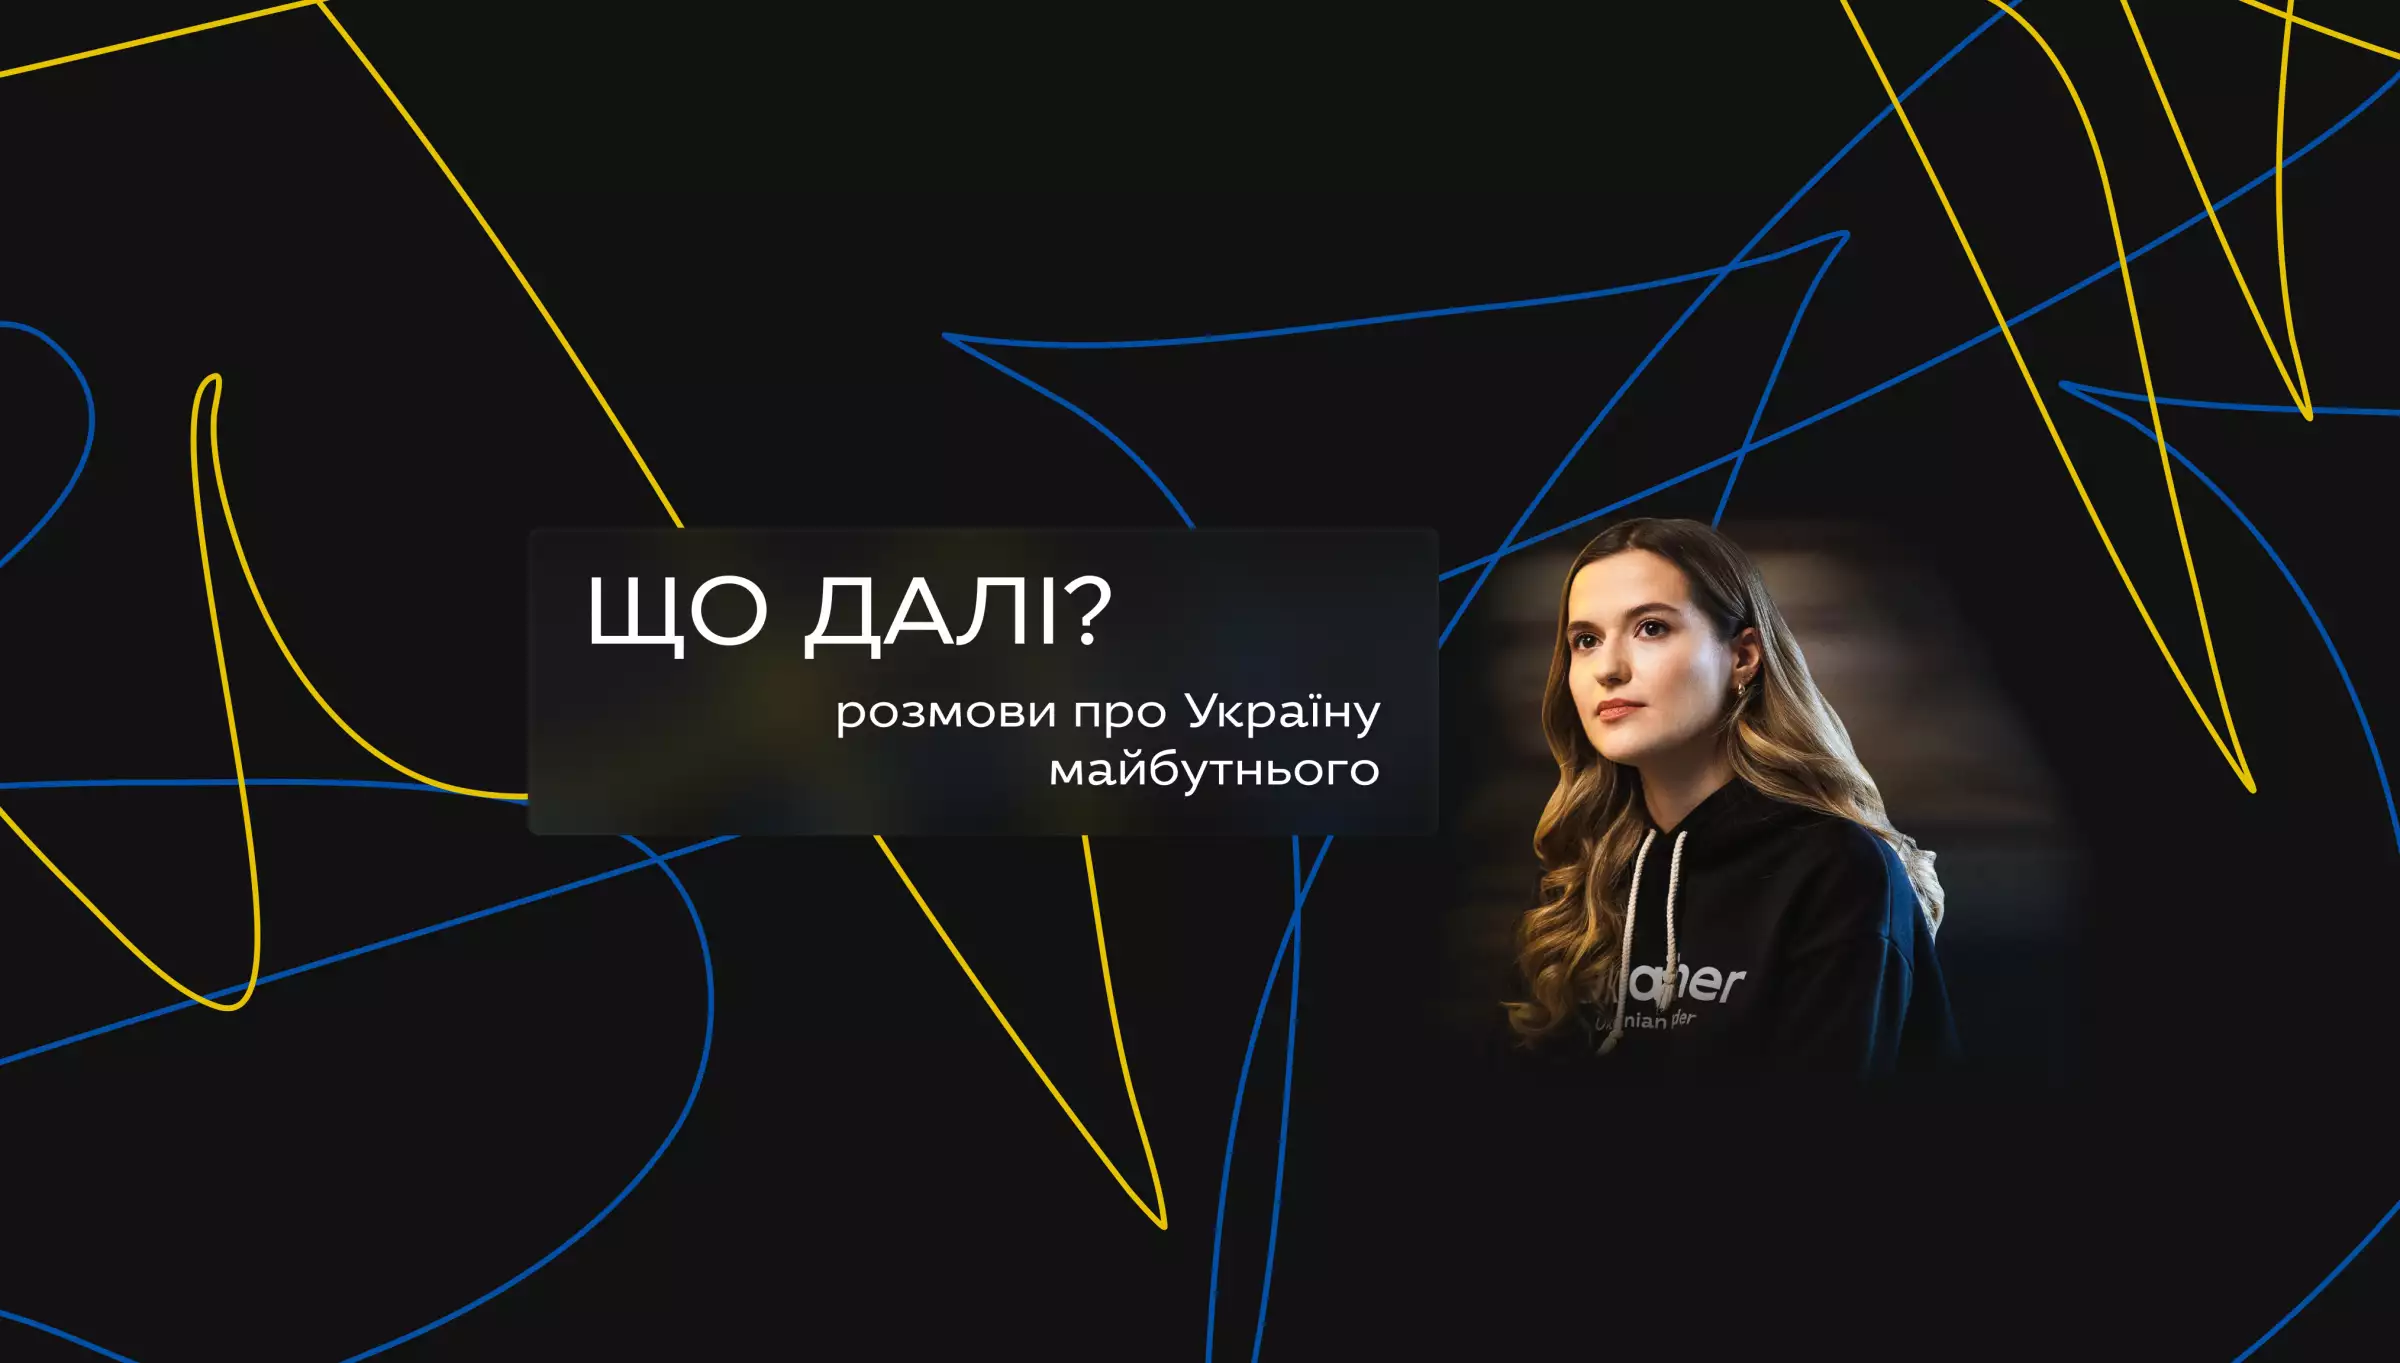 3 лютого — прем'єра нового ютуб-проєкту Ukraїner «Що далі? Розмови про Україну майбутнього» з ведучою Юлією Тимошенко